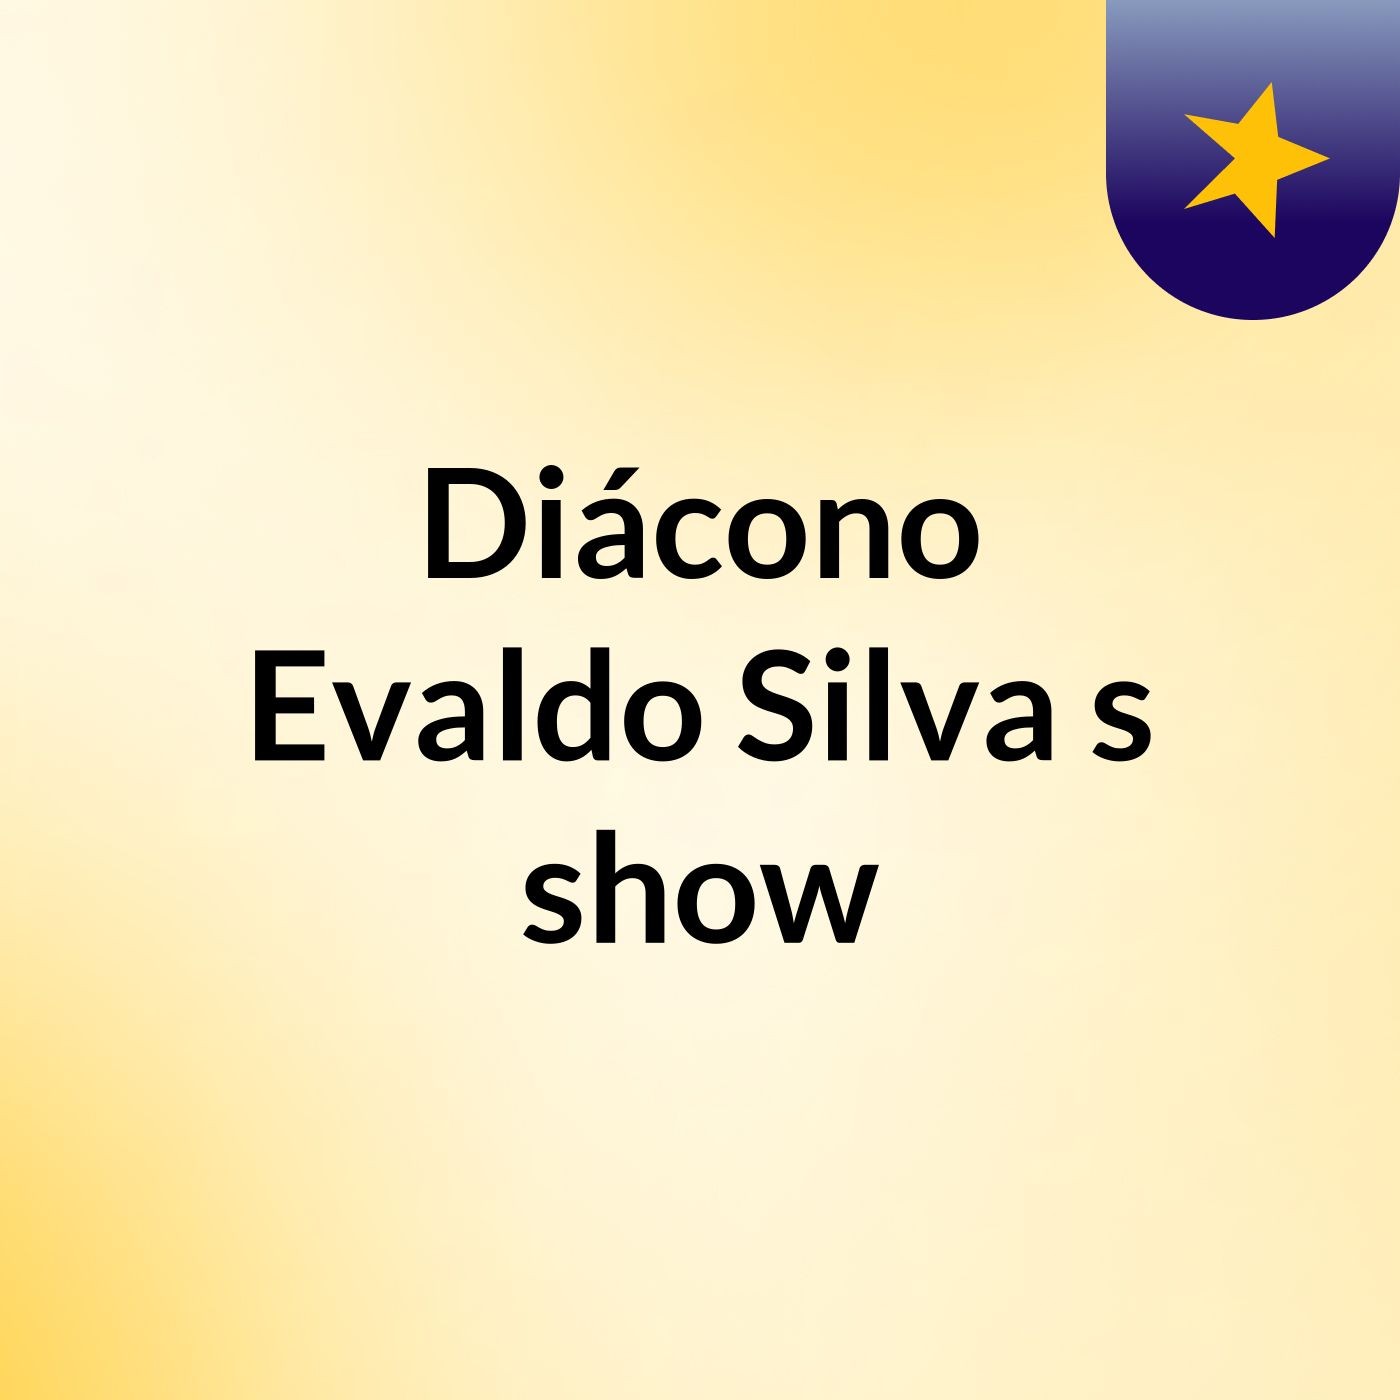 Diácono Evaldo Silva's show